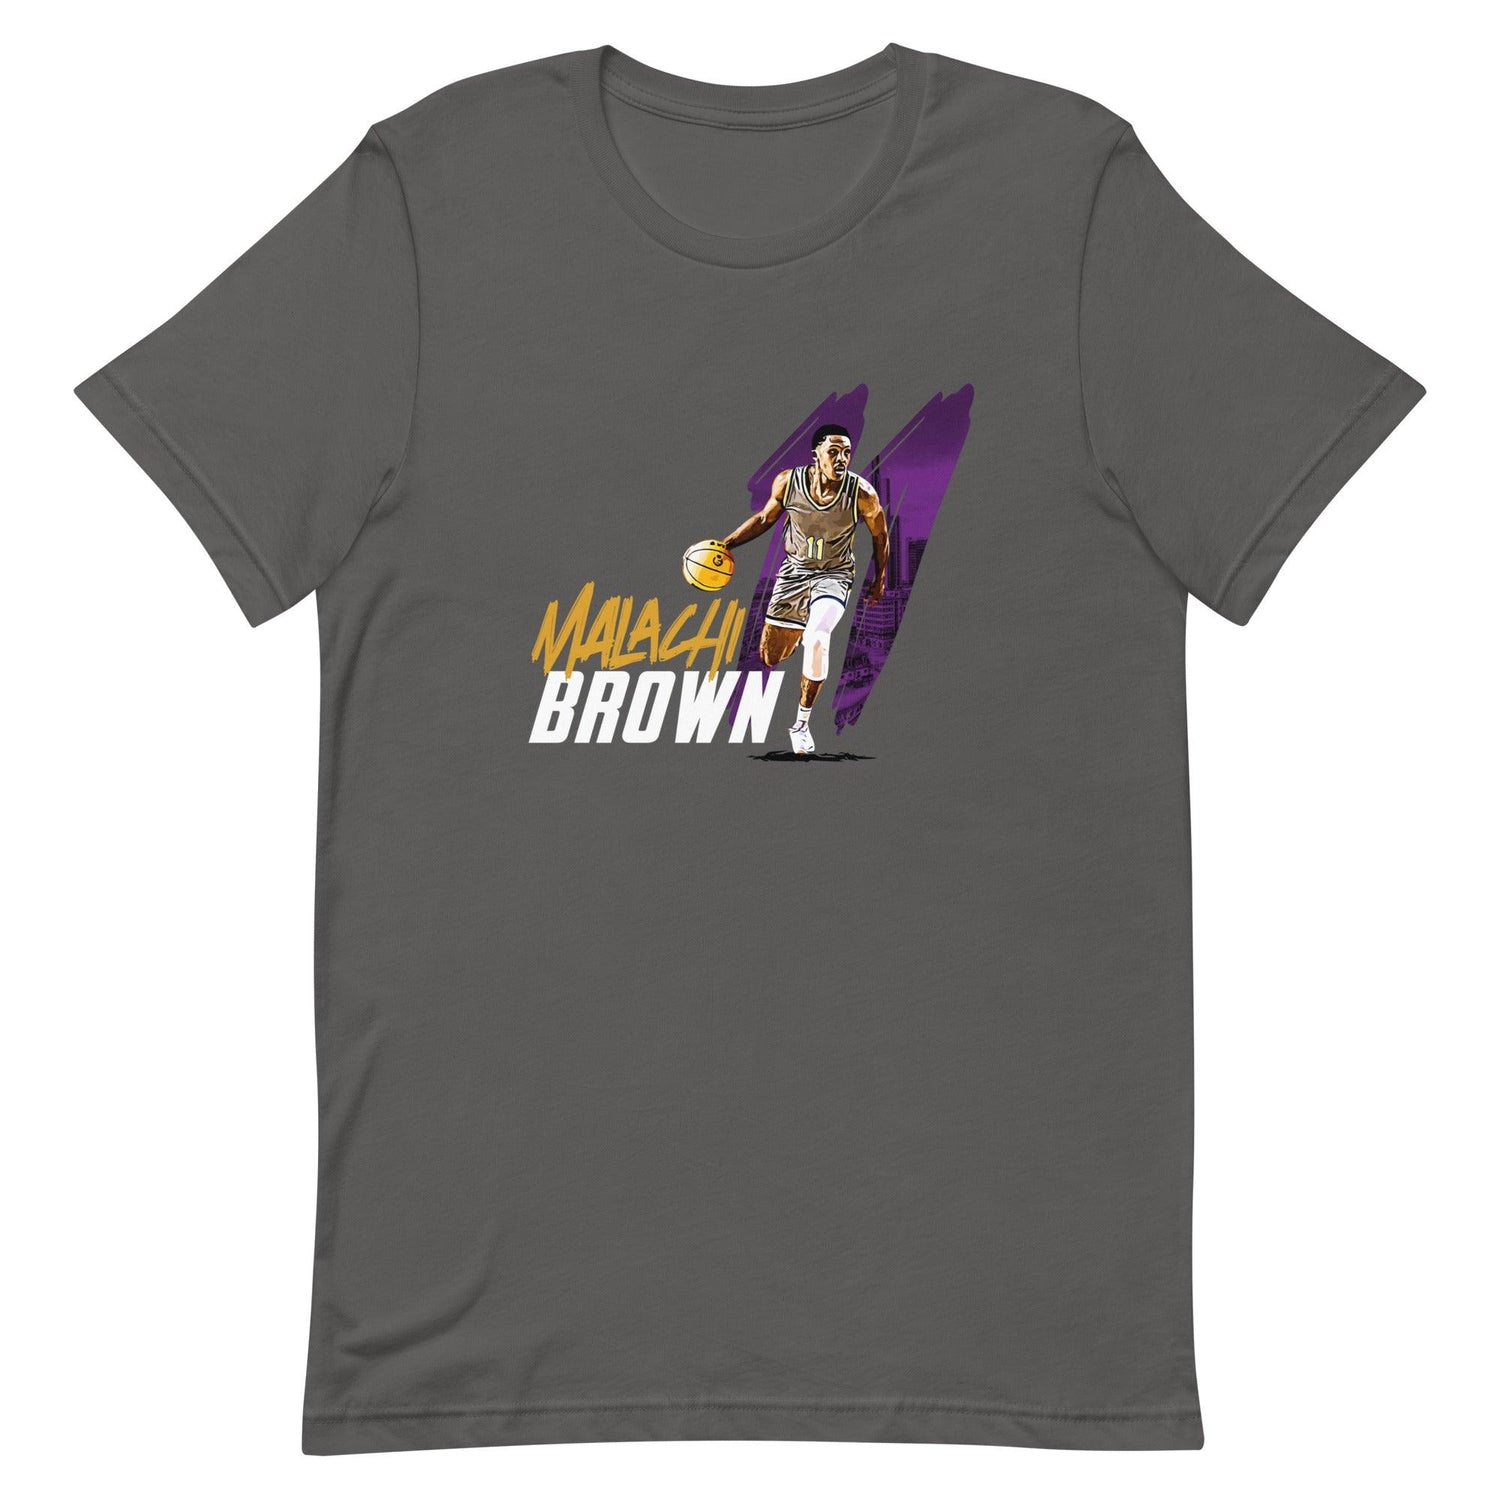 Malachi Brown "Gameday" t-shirt - Fan Arch